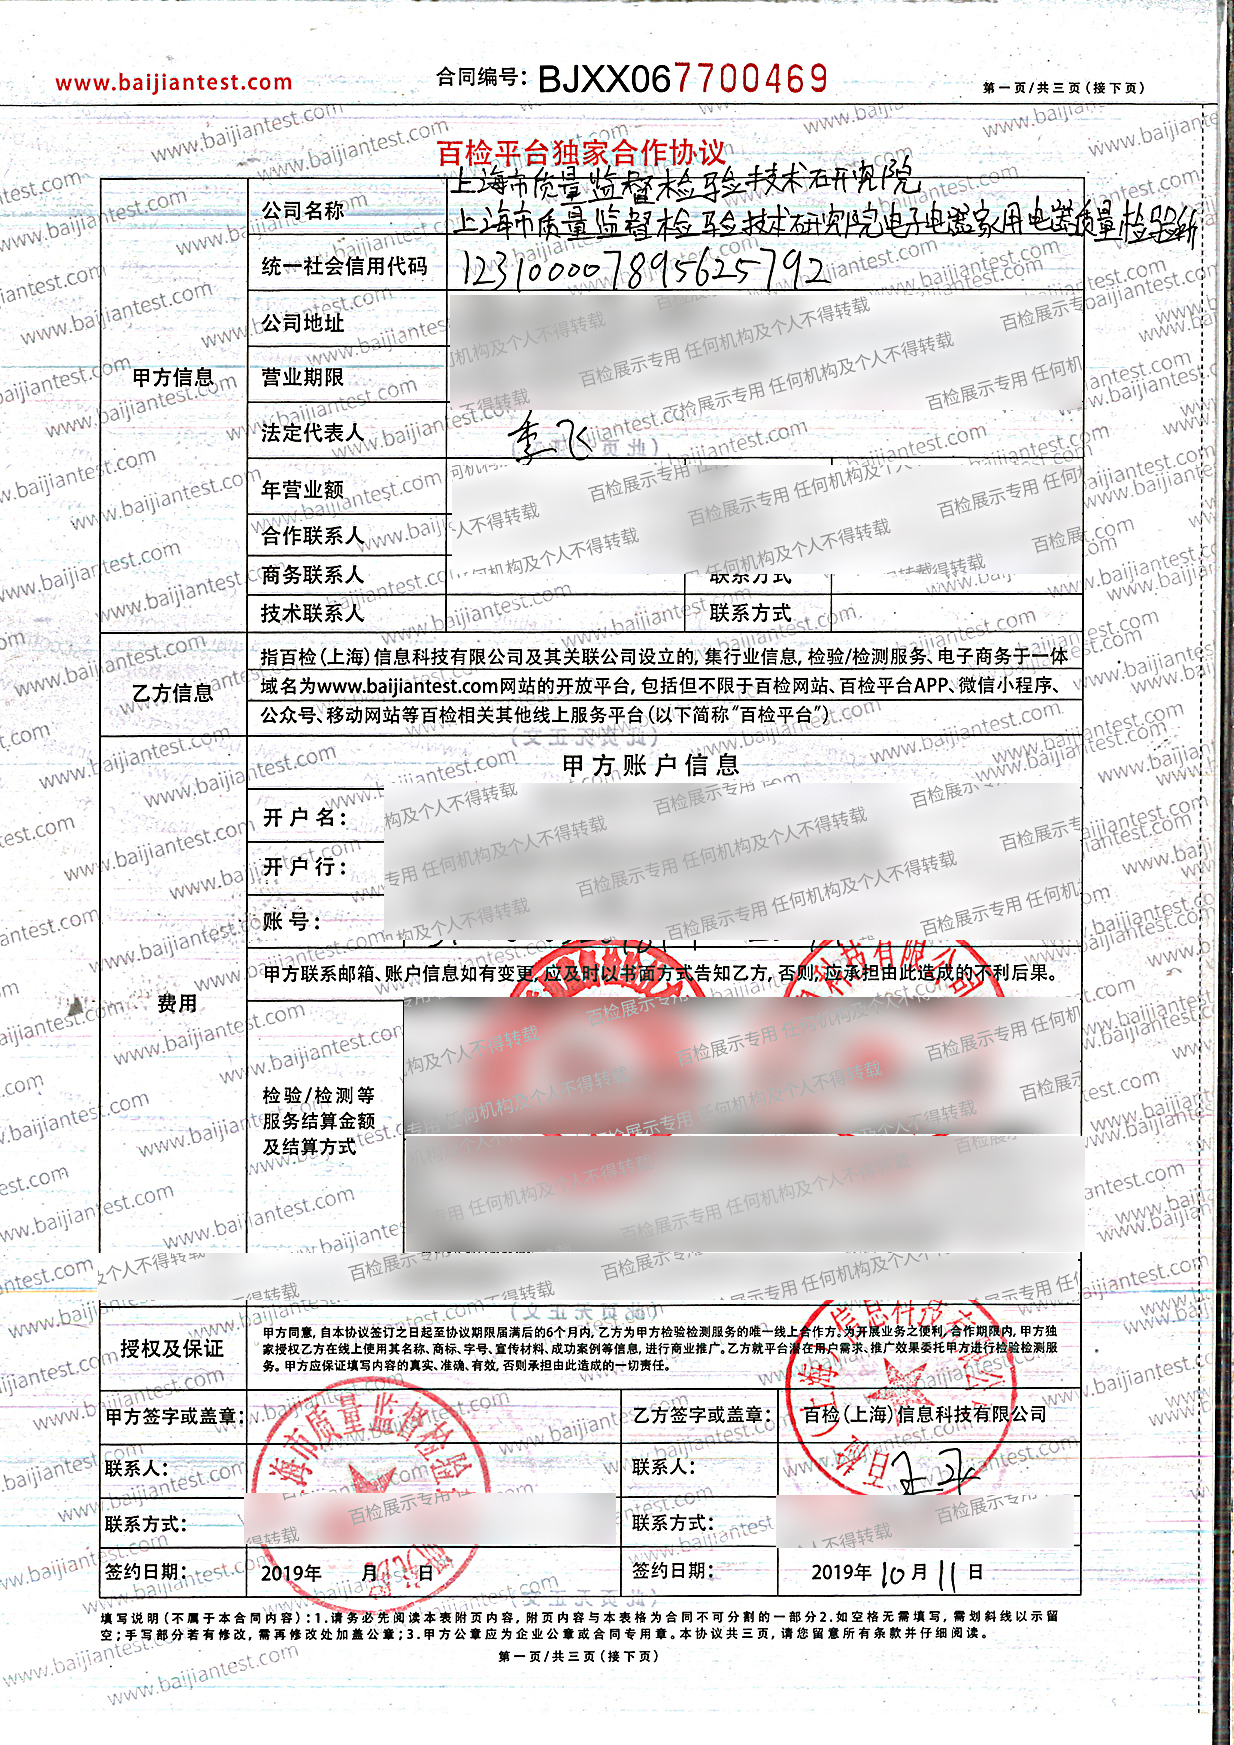 上海市质量监督检验技术研究院电子电器家具电器质量检验所